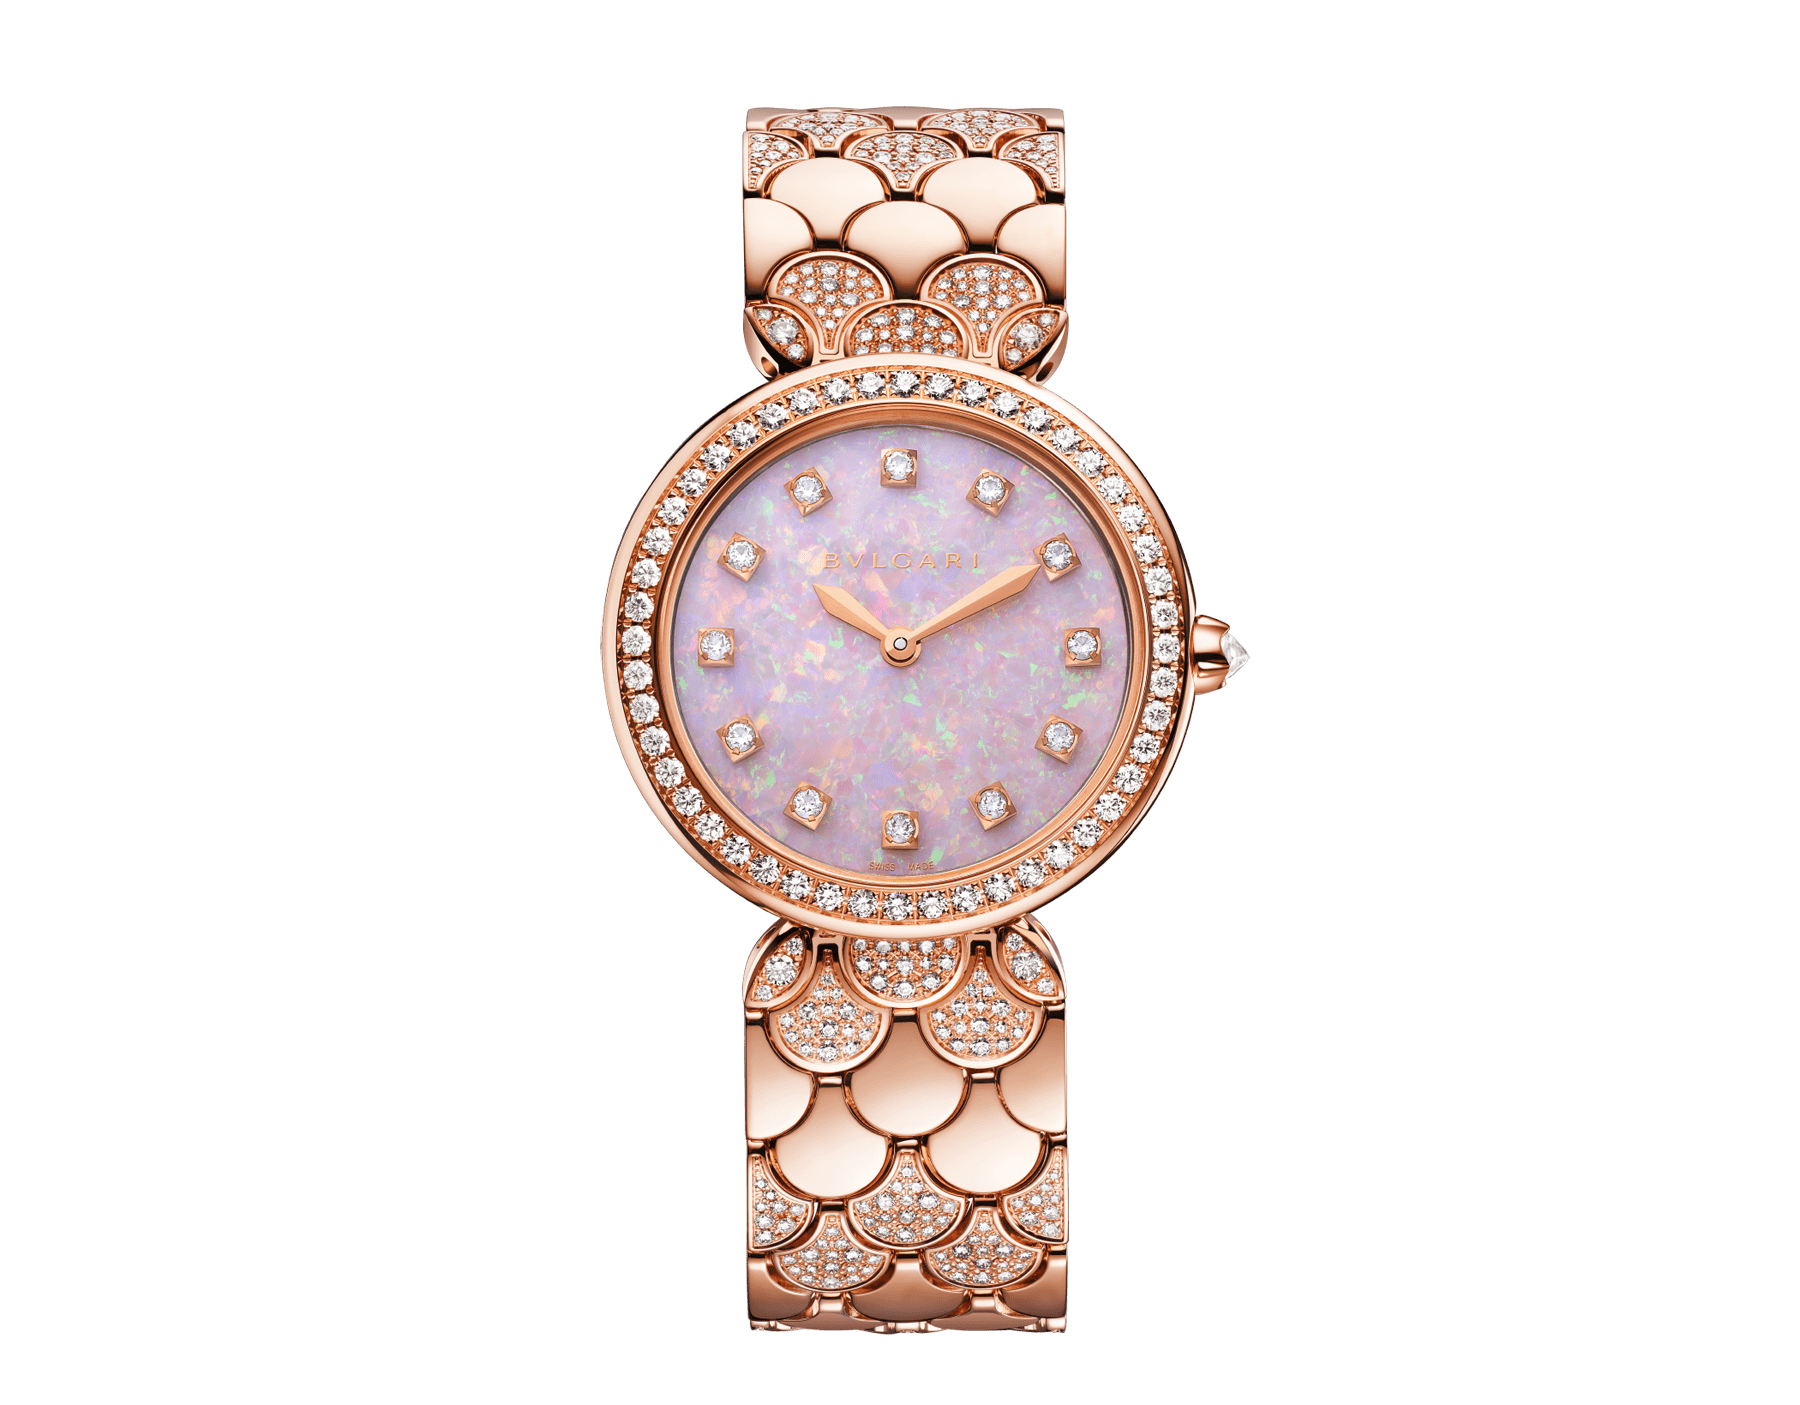 DIVAS’ DREAM 腕錶，18K 玫瑰金錶殼和錶帶鑲飾明亮型切割鑽石，粉紅色蛋白石錶盤，12 個鑽石時標。防水深度 30 公尺。 103647 image 1